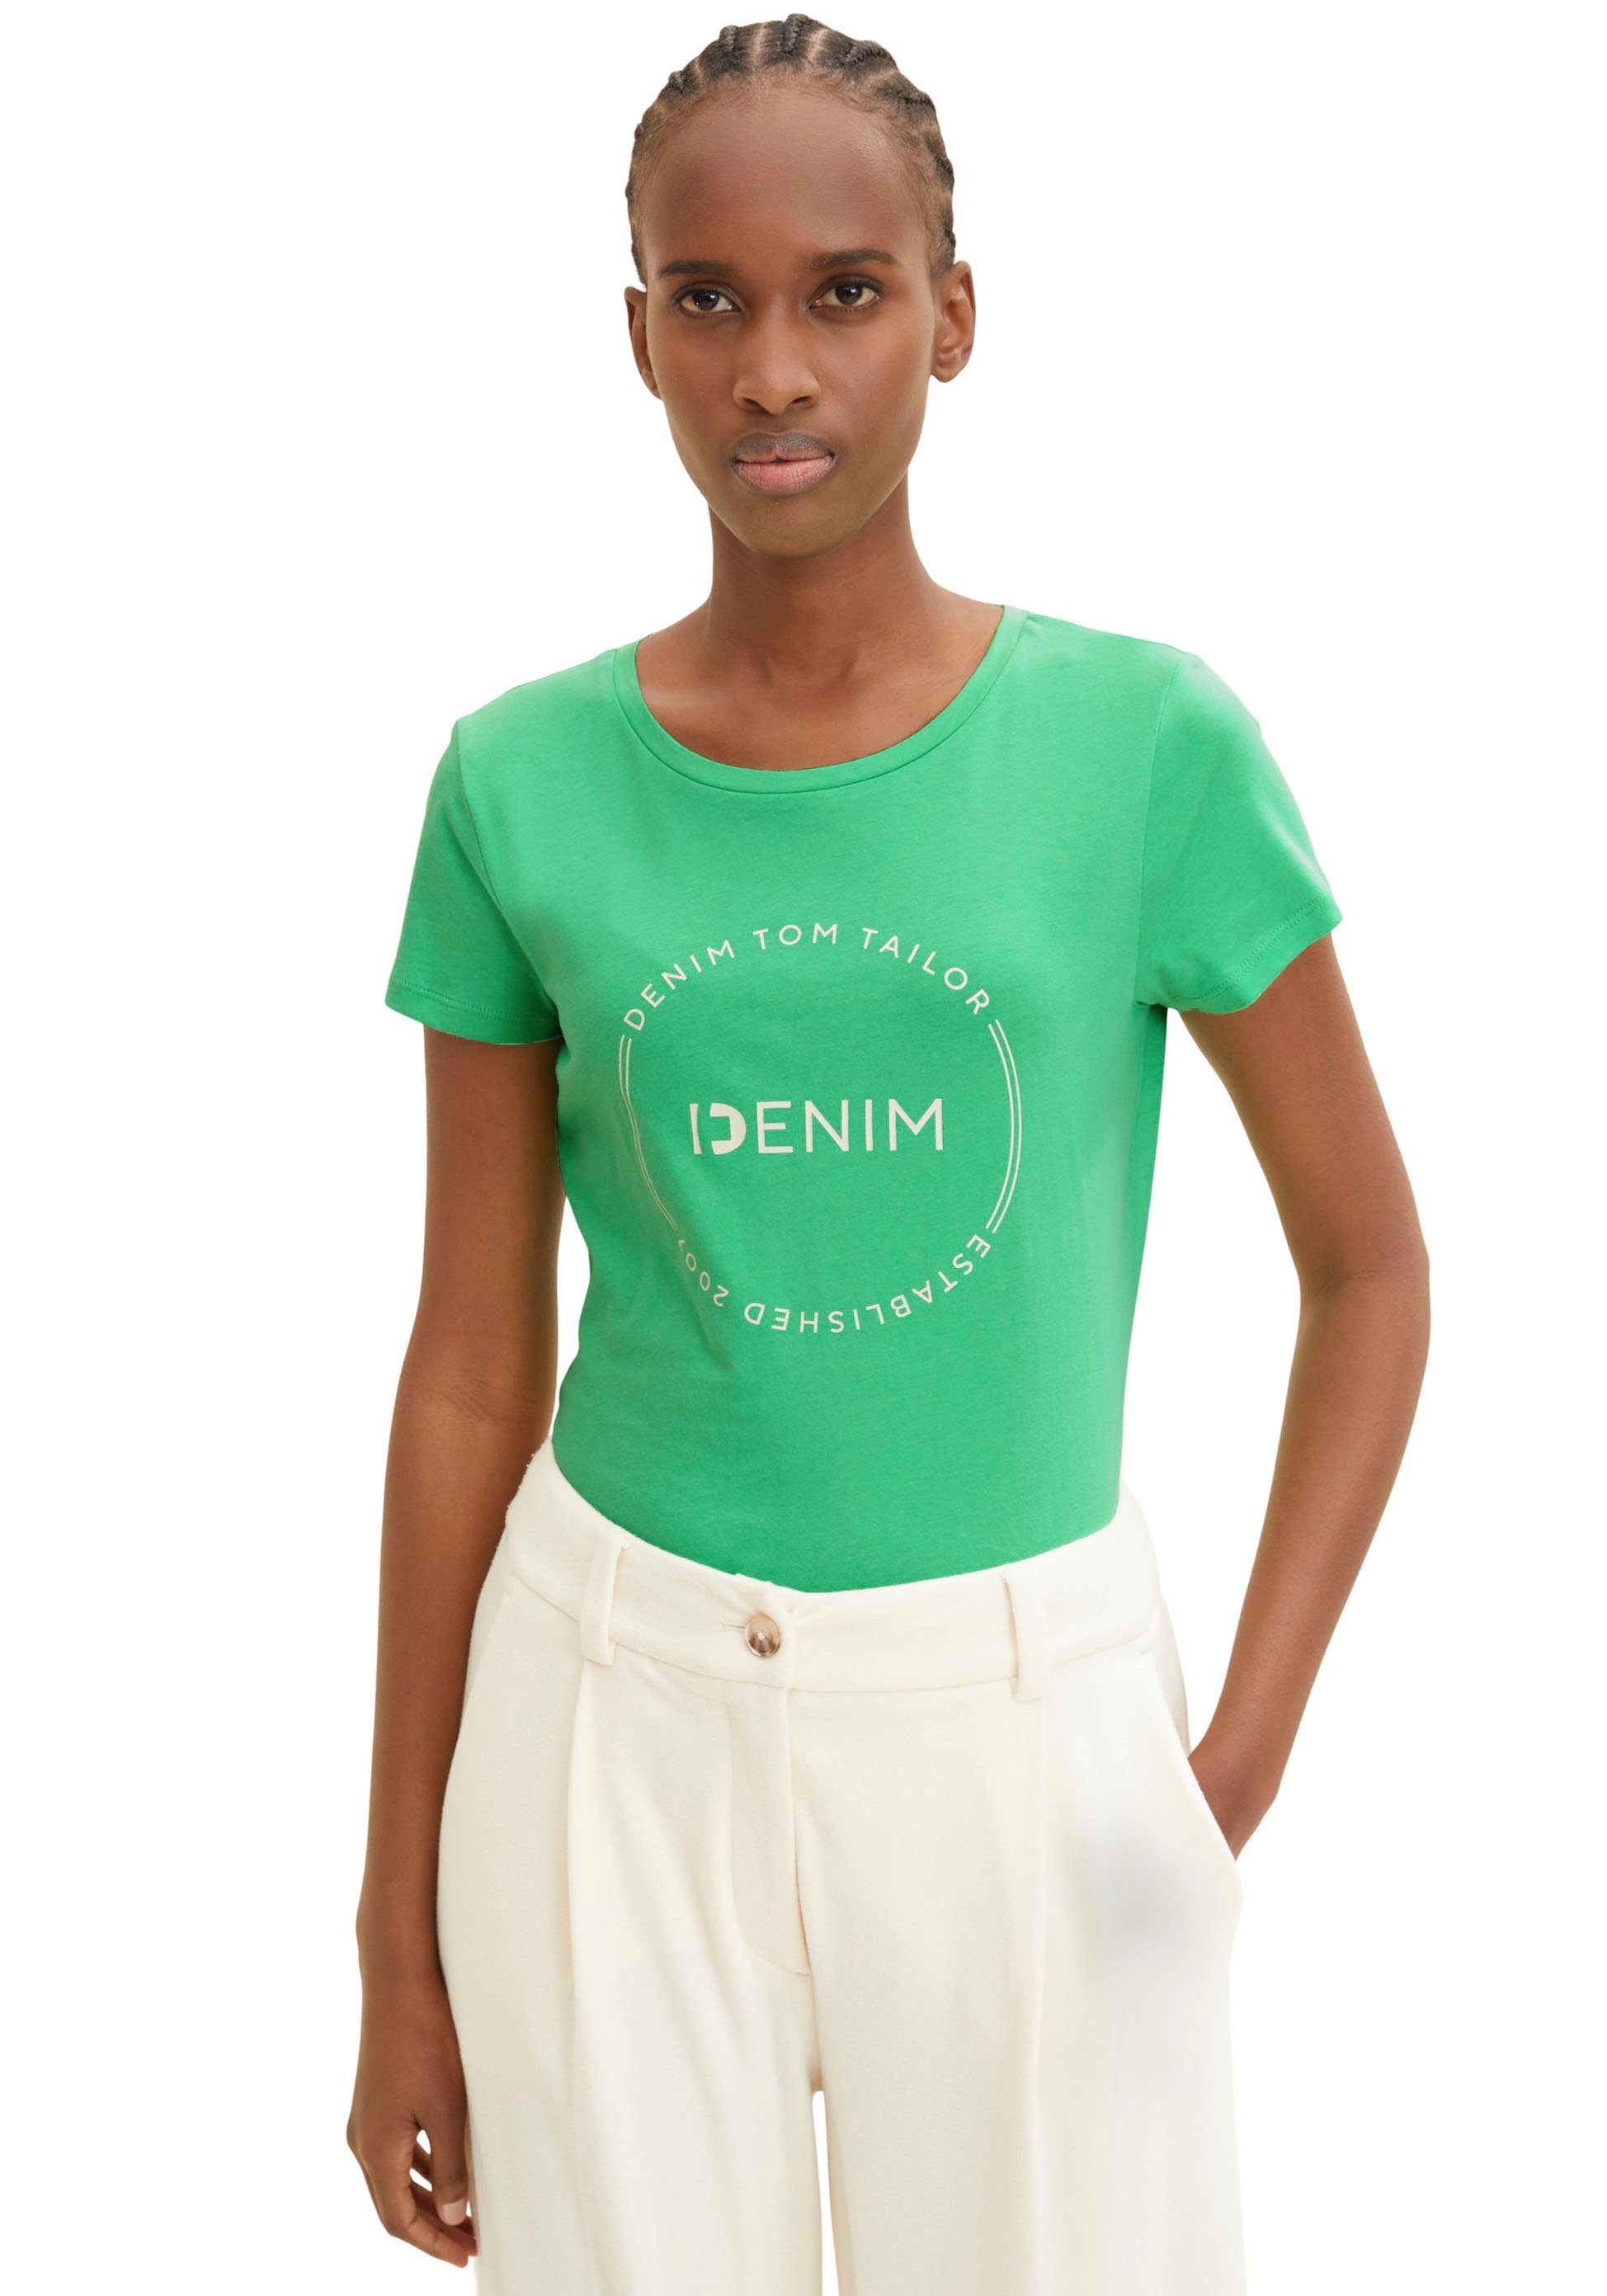 TOM TAILOR Denim T-Shirt grün | T-Shirts